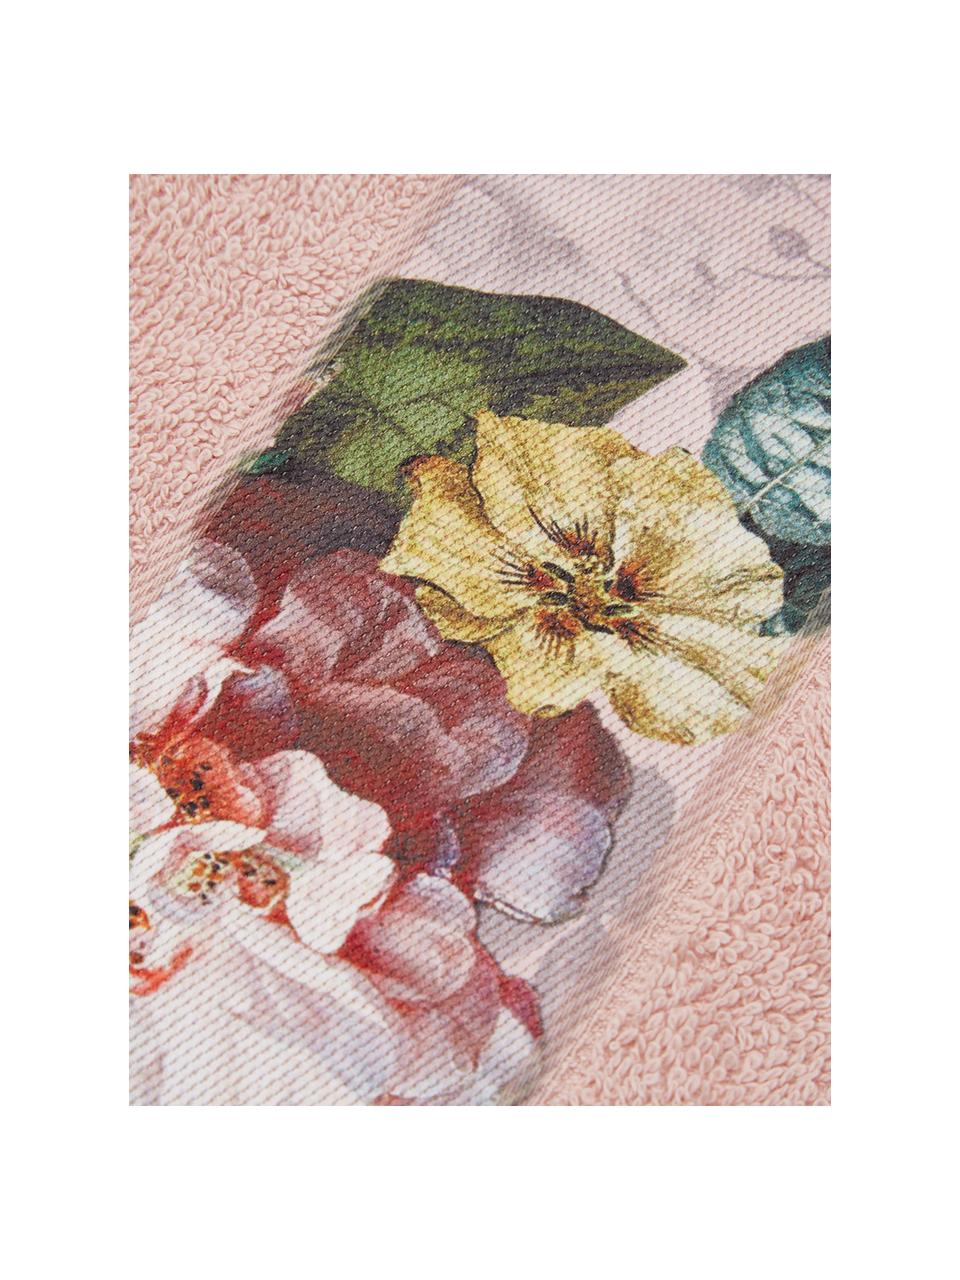 Handtuch Fleur in verschiedenen Größen, mit Blumen-Bordüre, 97% Baumwolle, 3% Polyester, Rosa, Mehrfarbig, Handtuch, B 60 x L 110 cm